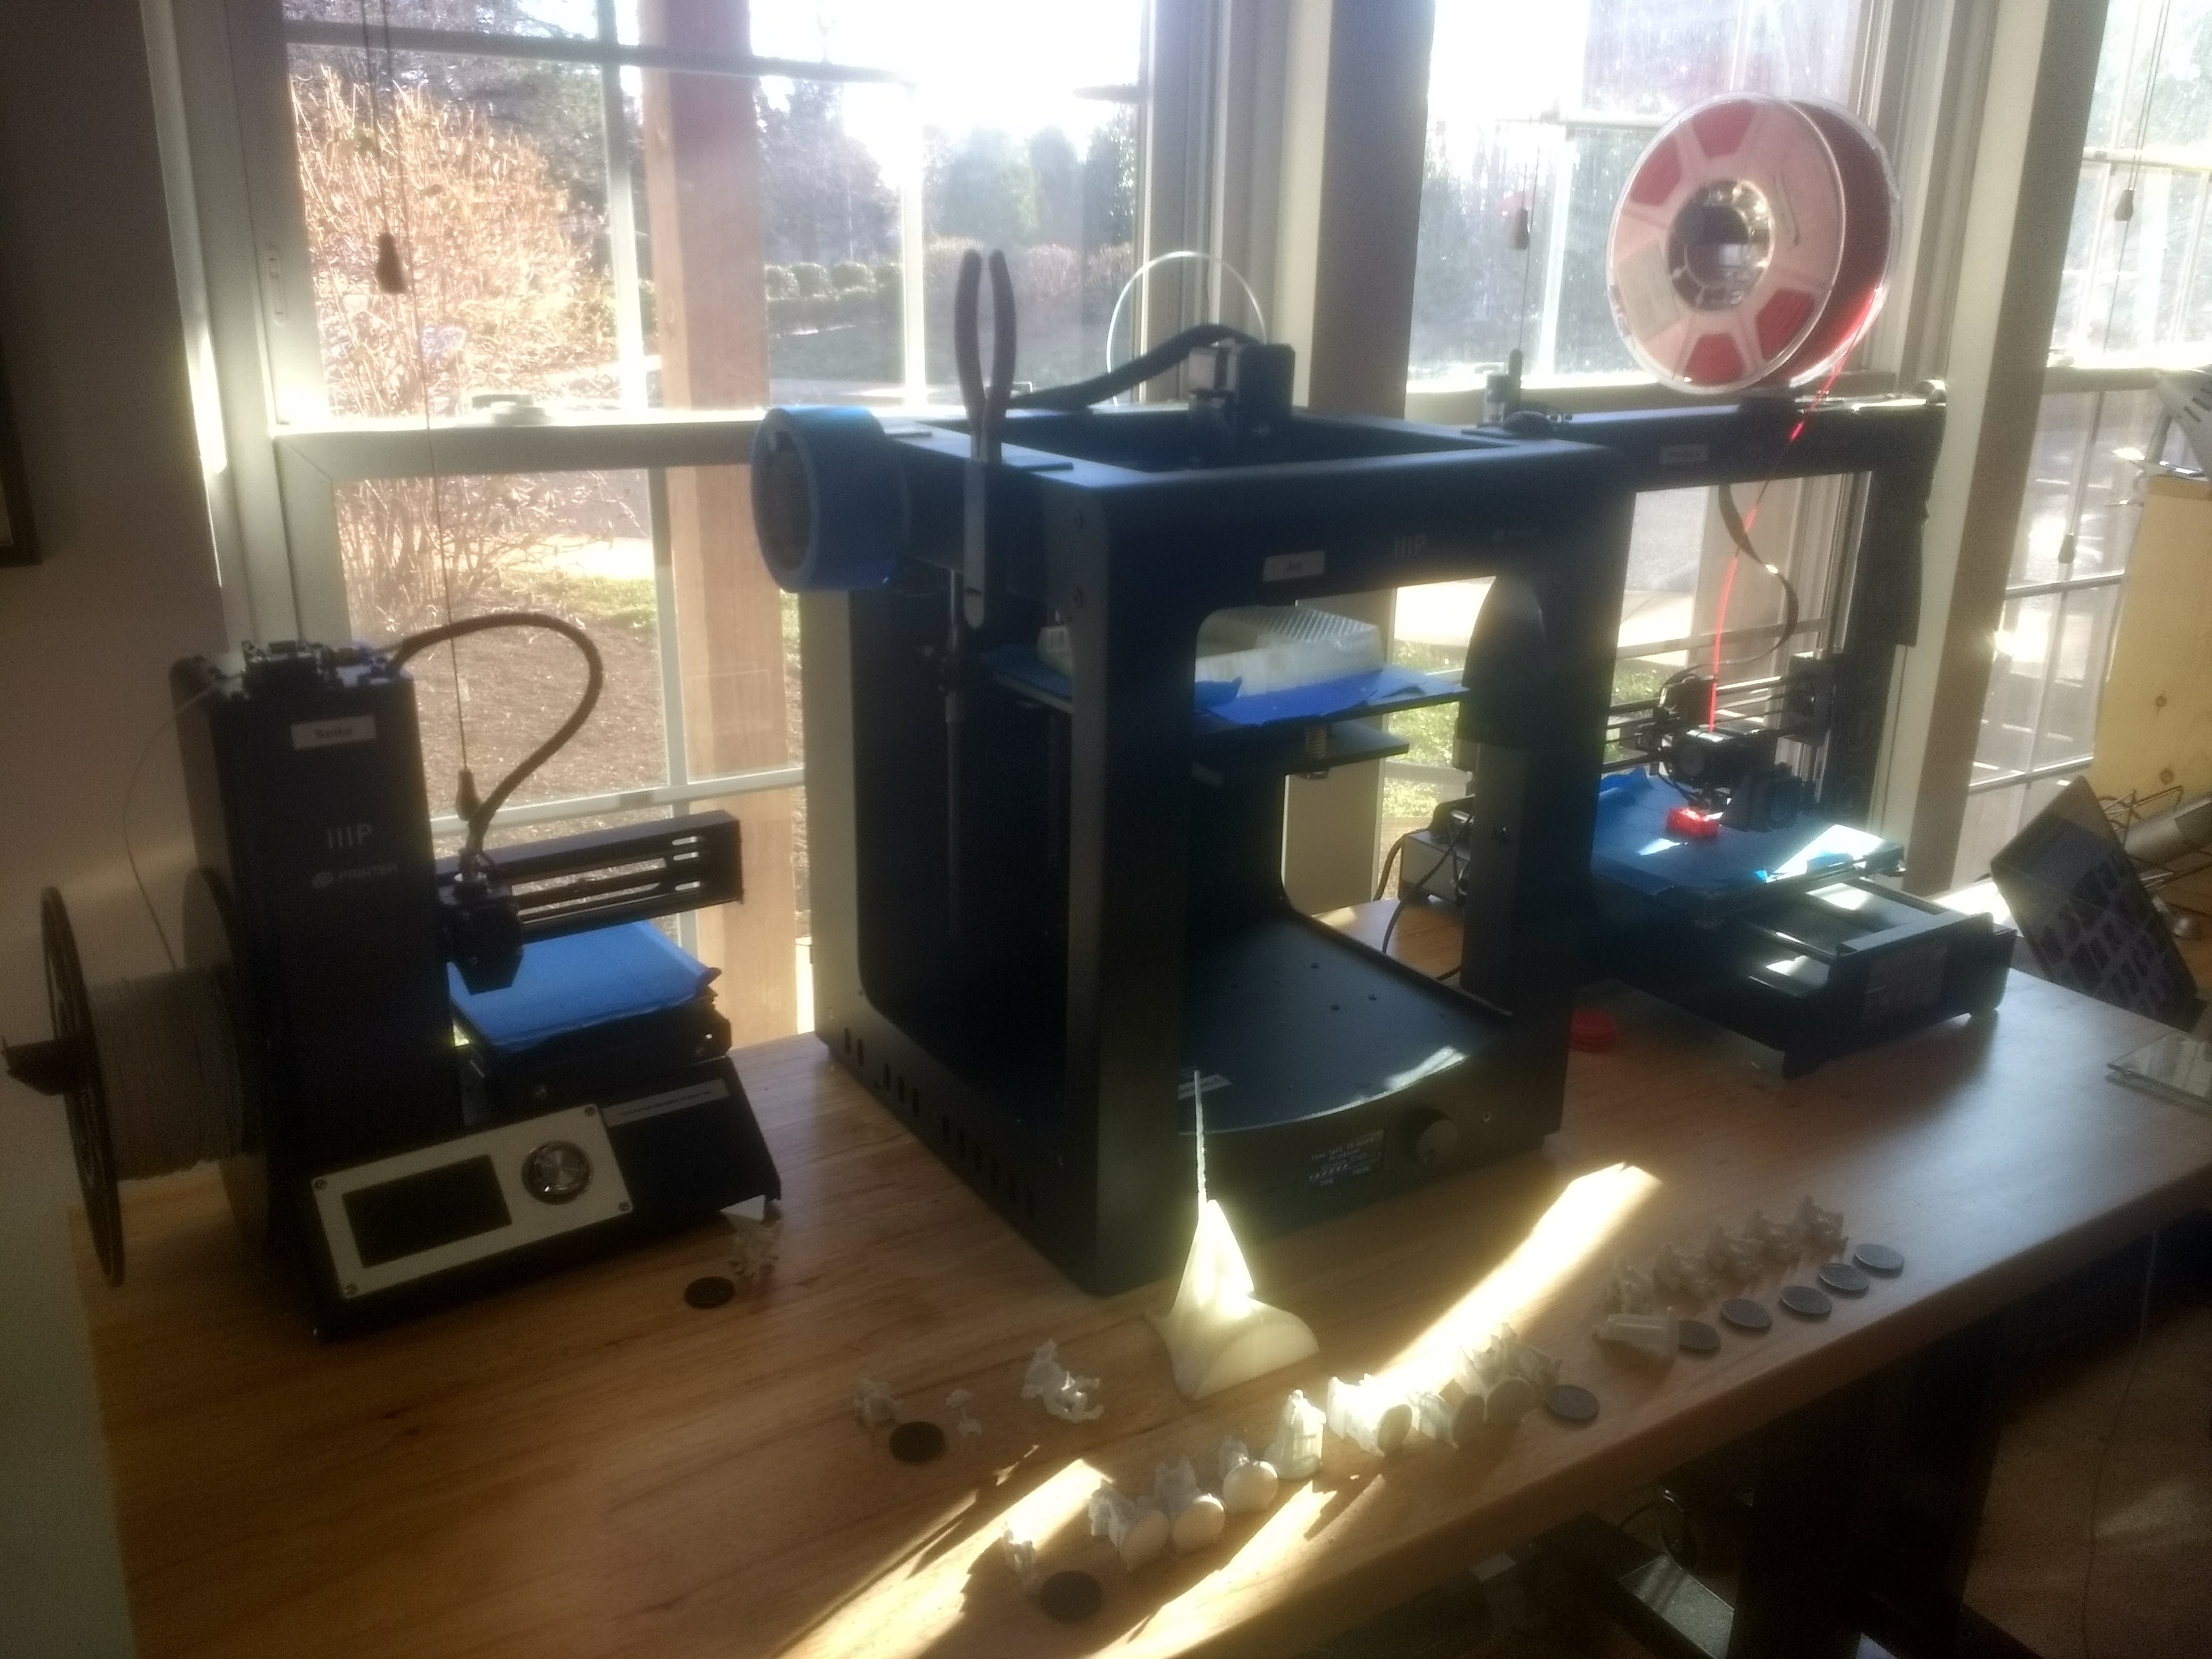 Three 3D printers